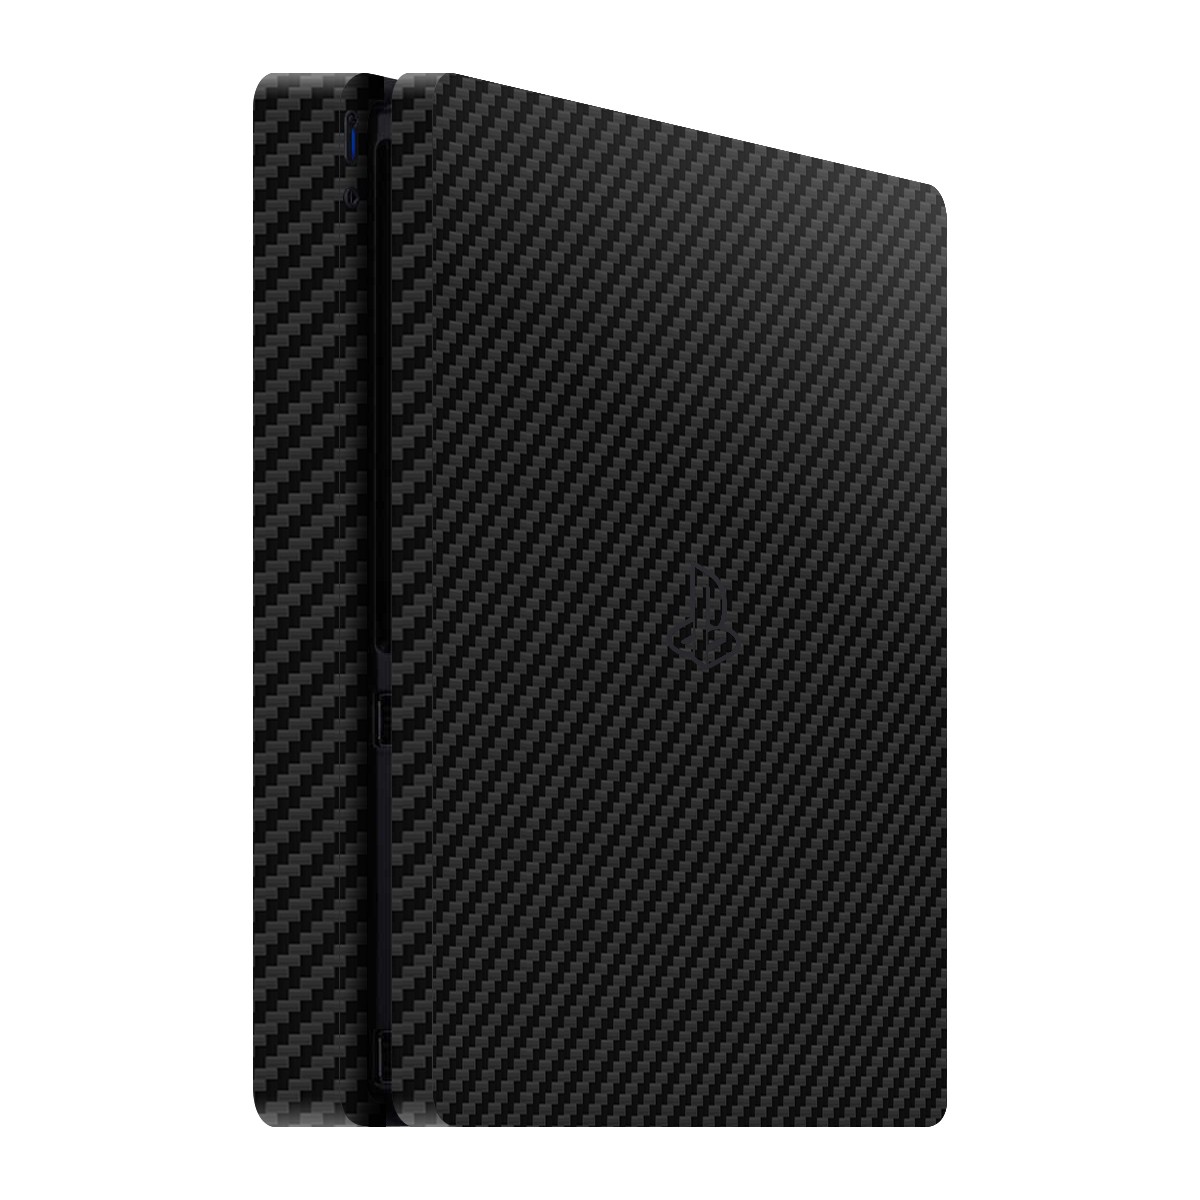 PlayStation 4 Slim Kaplama Siyah Karbon Fiber